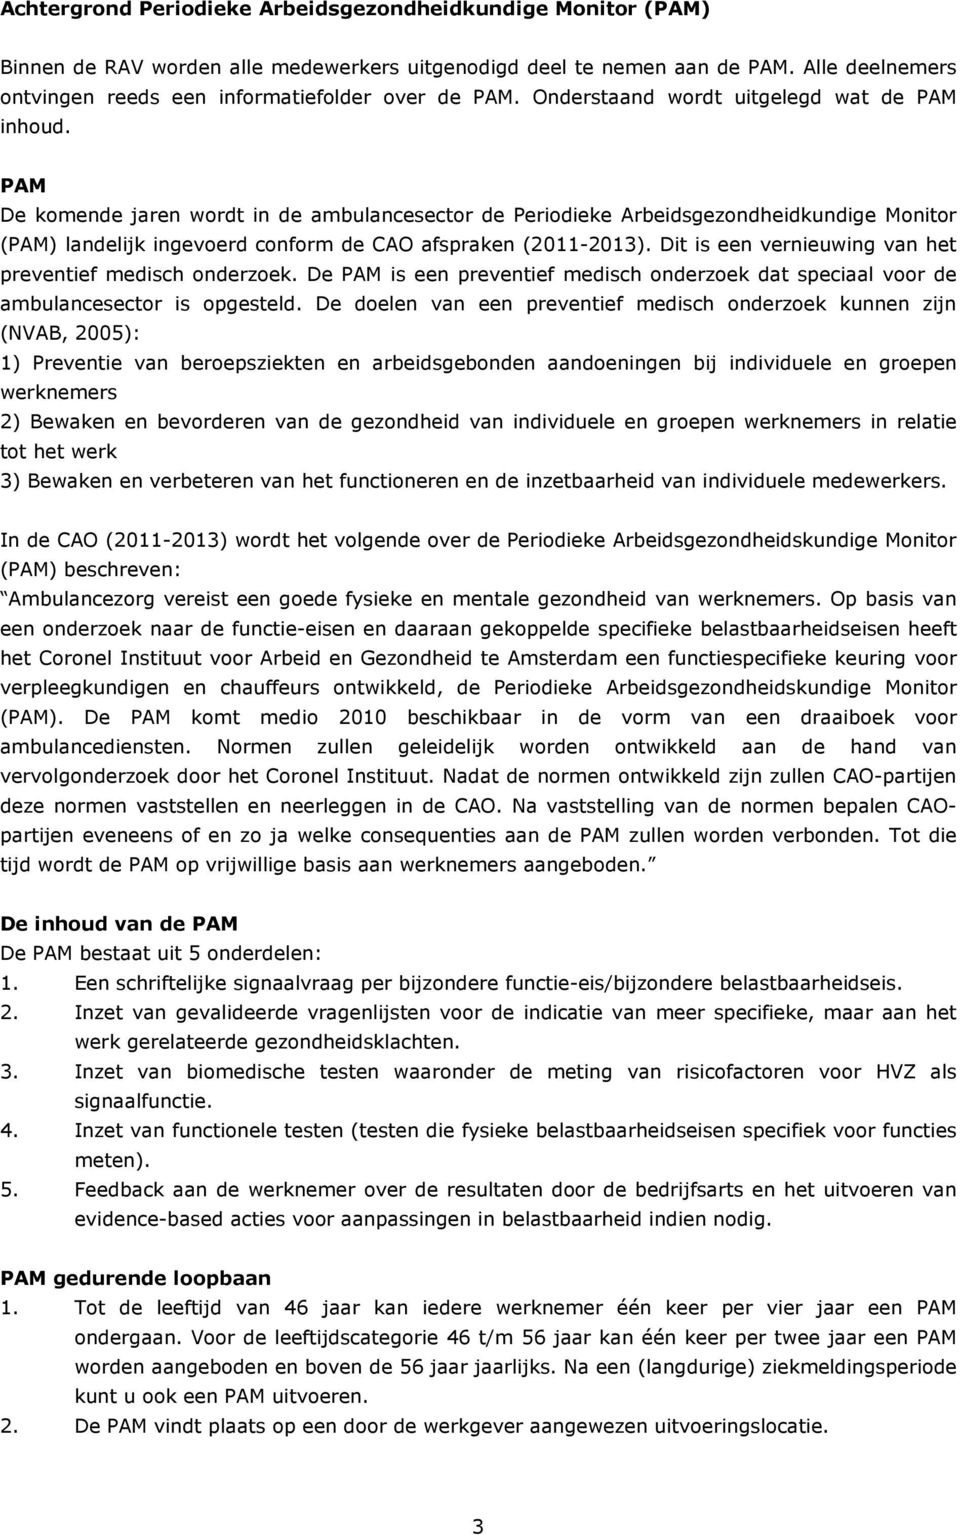 PAM De komende jaren wordt in de ambulancesector de Periodieke Arbeidsgezondheidkundige Monitor (PAM) landelijk ingevoerd conform de CAO afspraken (2011-2013).